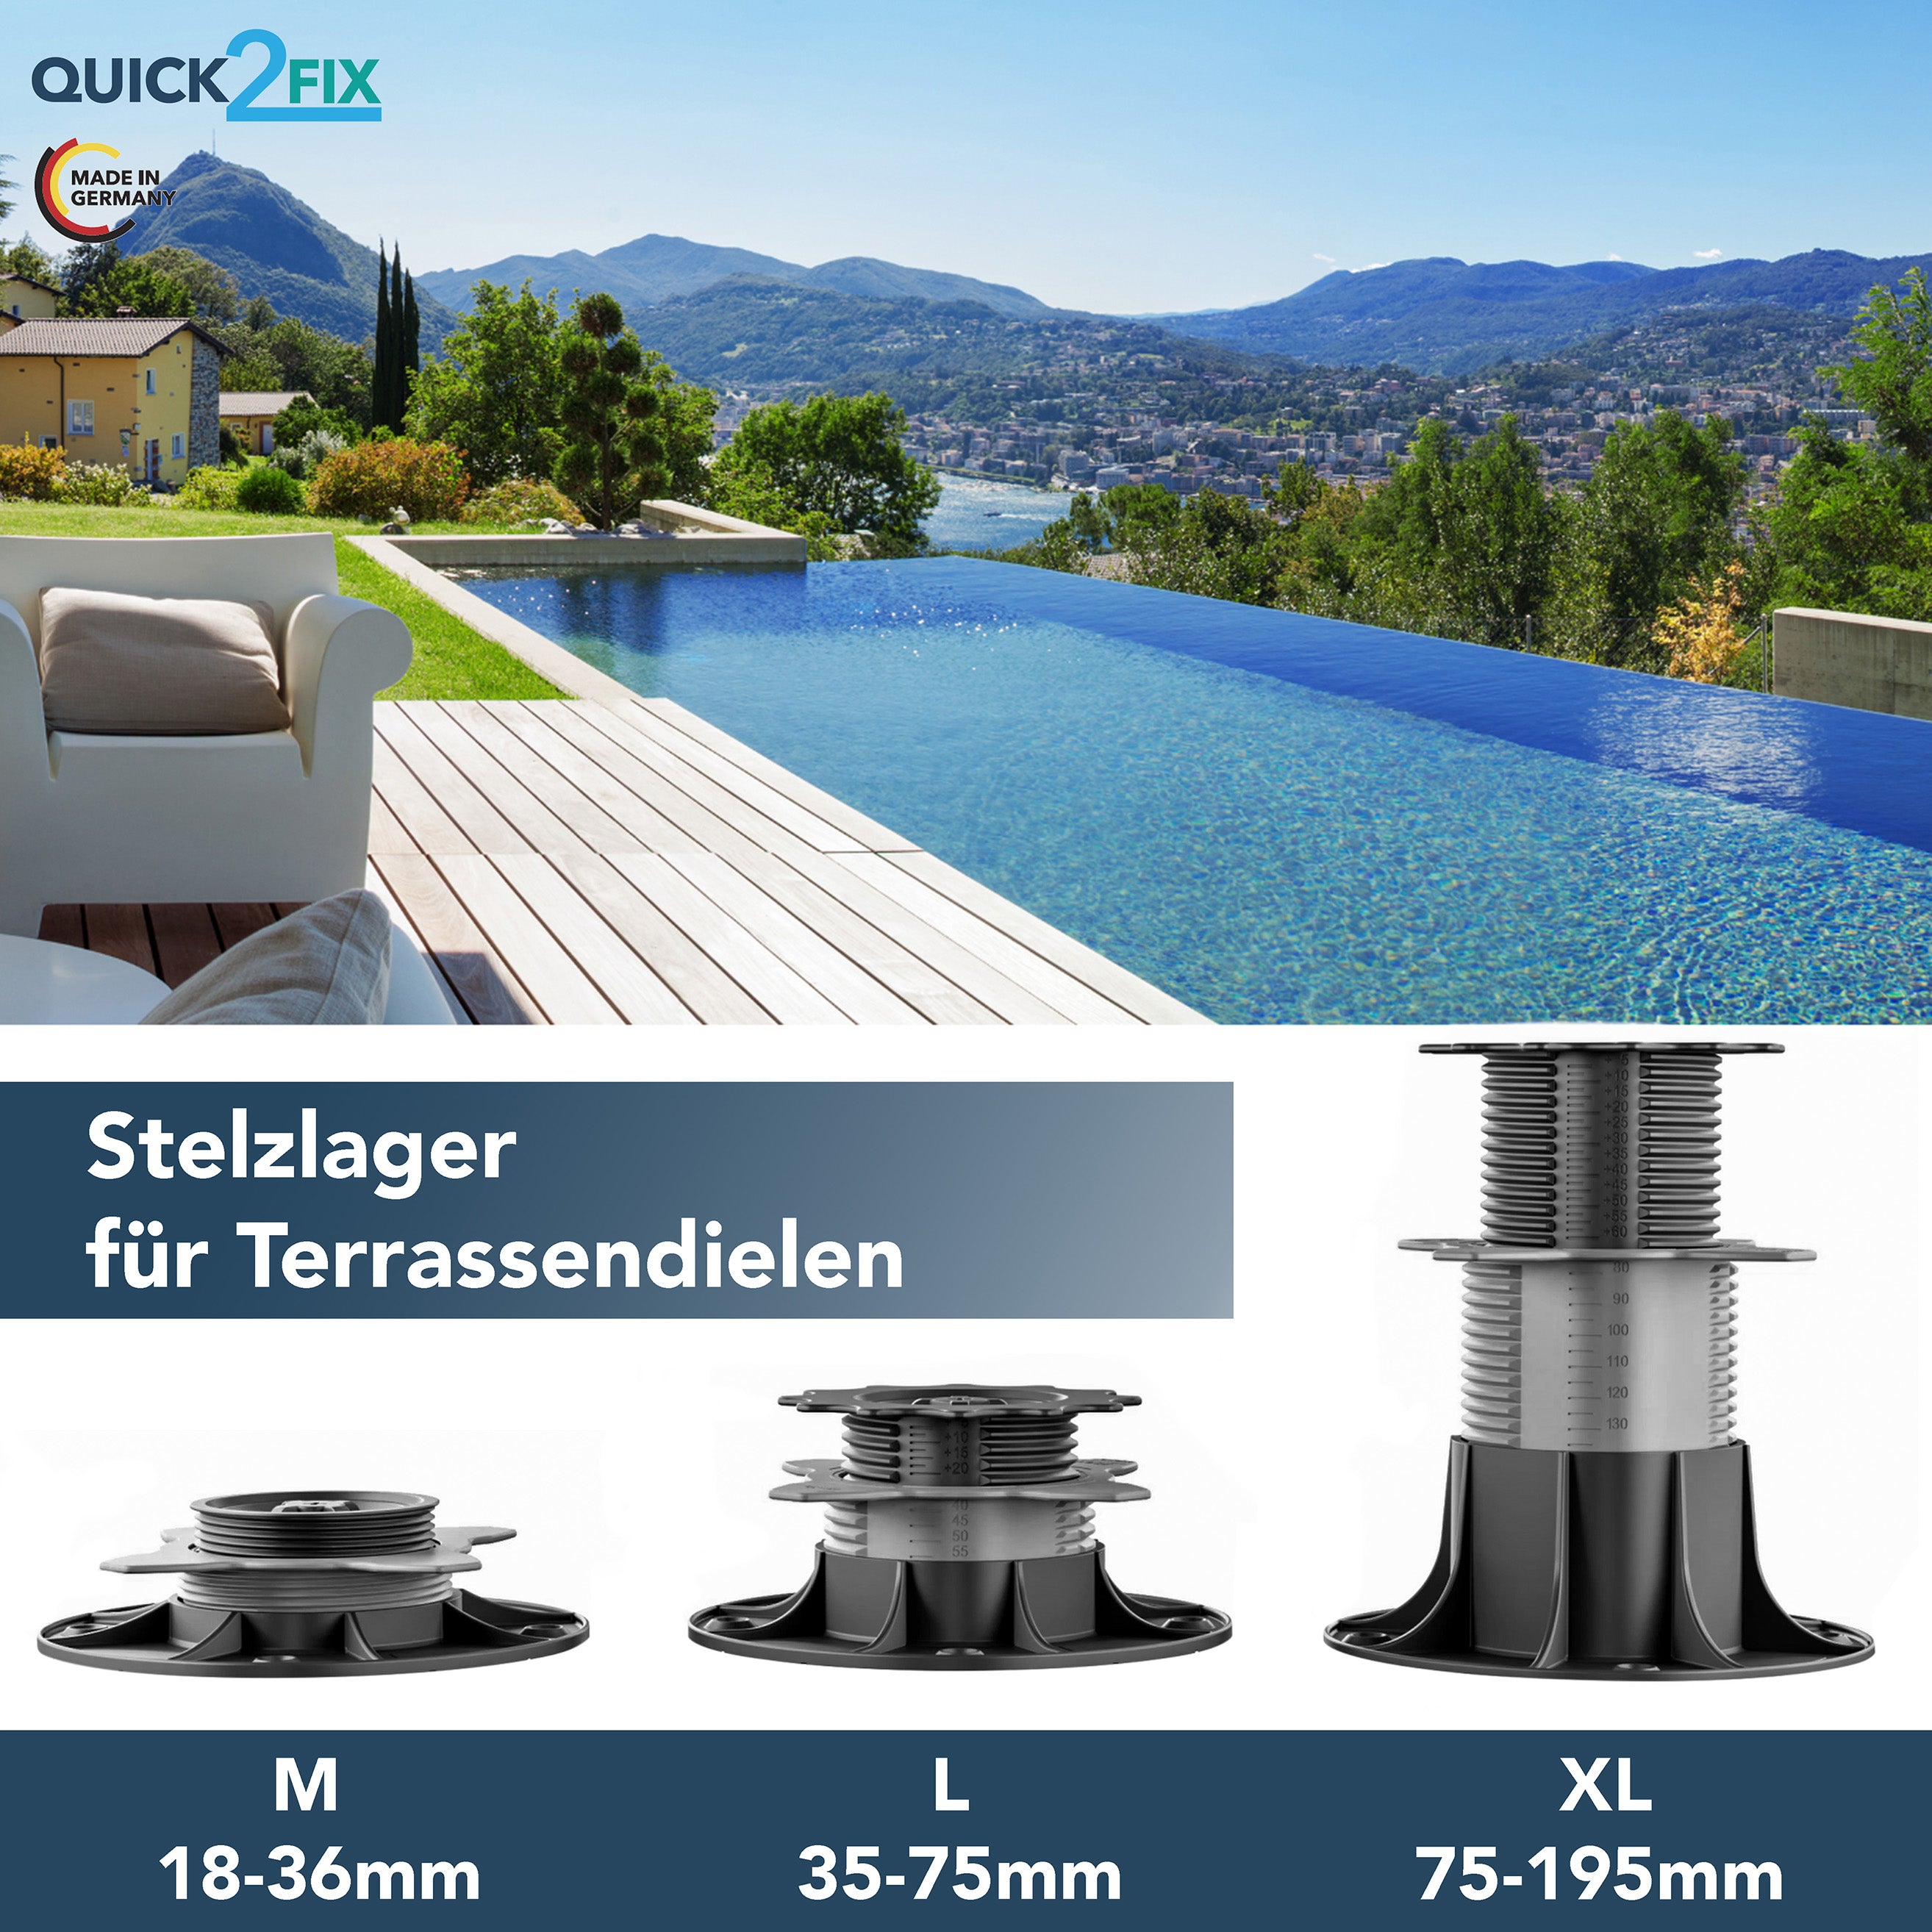 Terrassenpads für Stelzlager (Gummi-Pads 195 x 195 x 6,0 mm) 24 Stck.